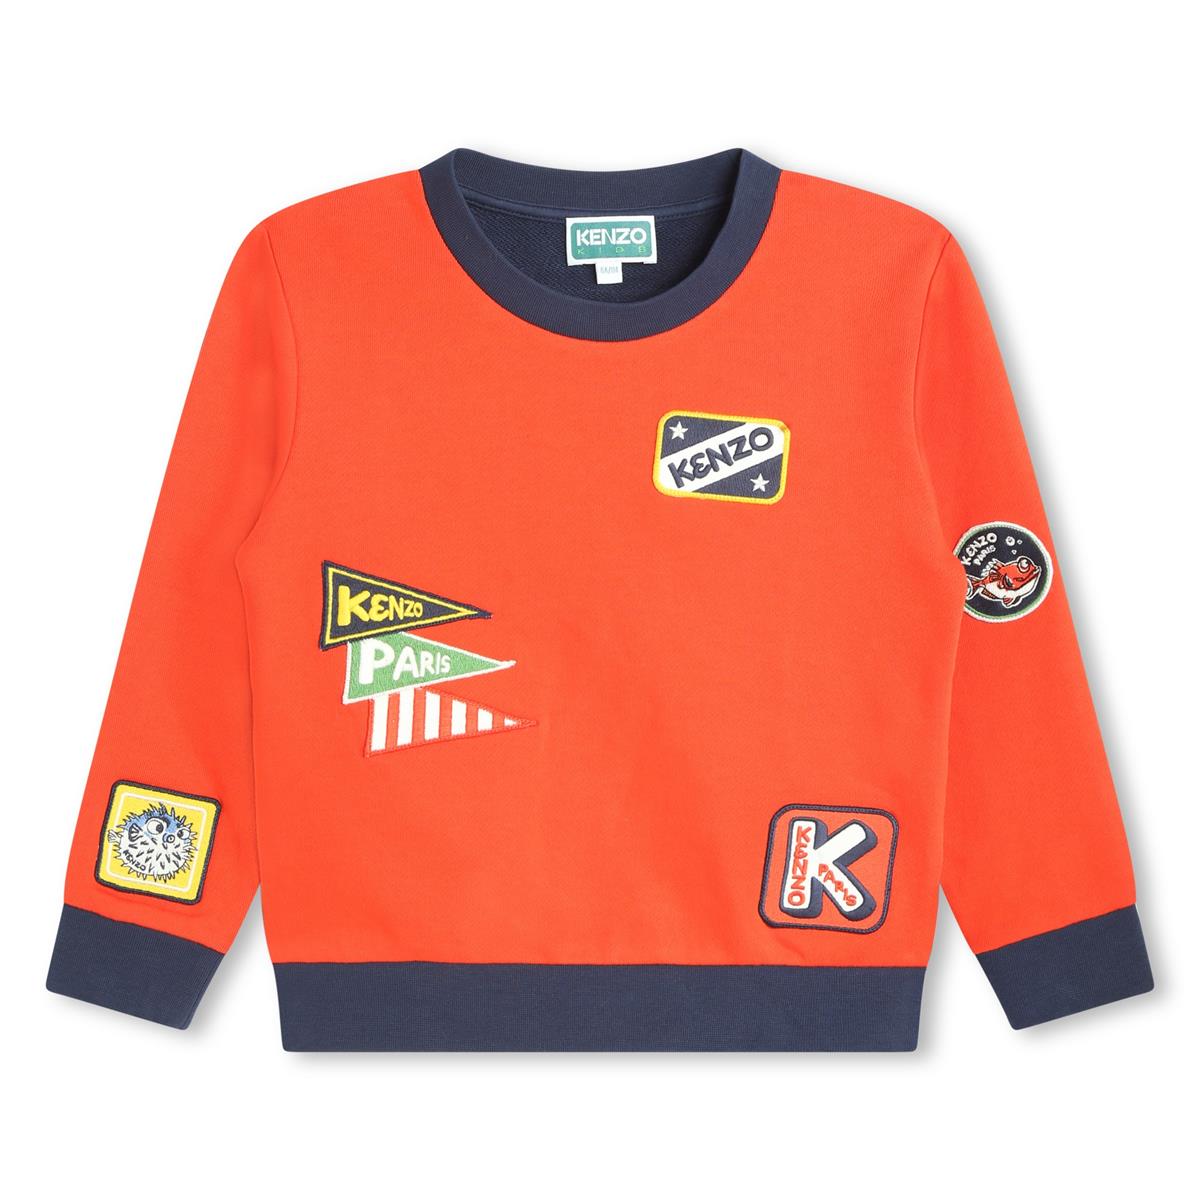 Boys Orange Cotton Sweatshirt